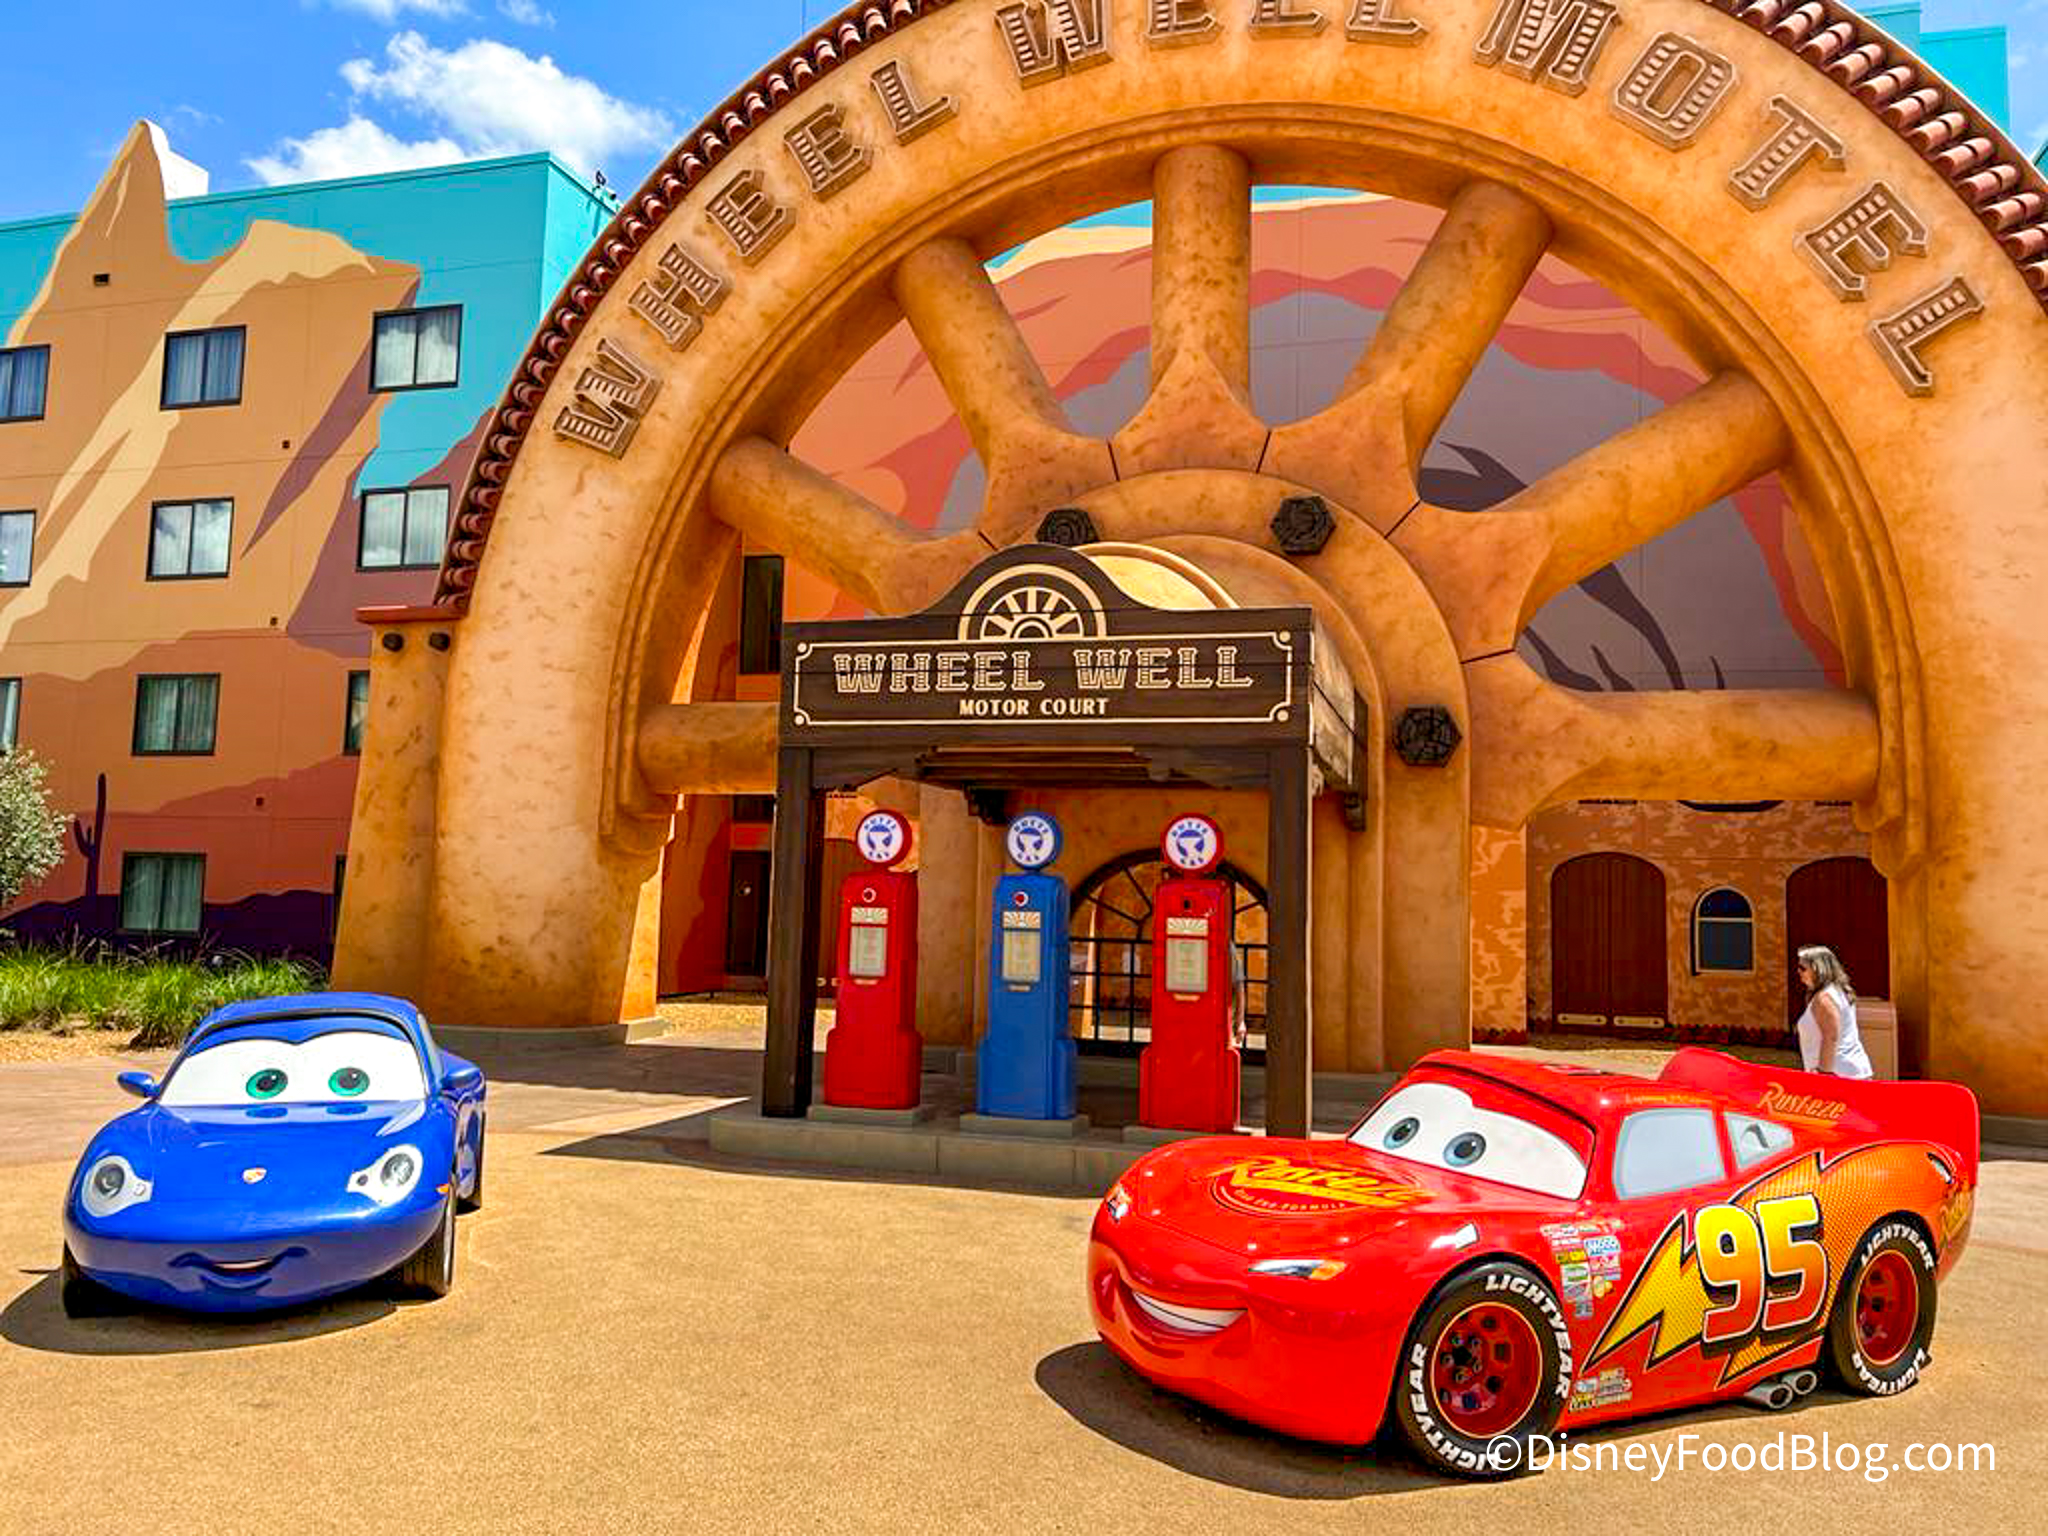 The Disney•Pixar Cars inspired Lightning McQueen Car Body arrives at the  goal line on November 7!